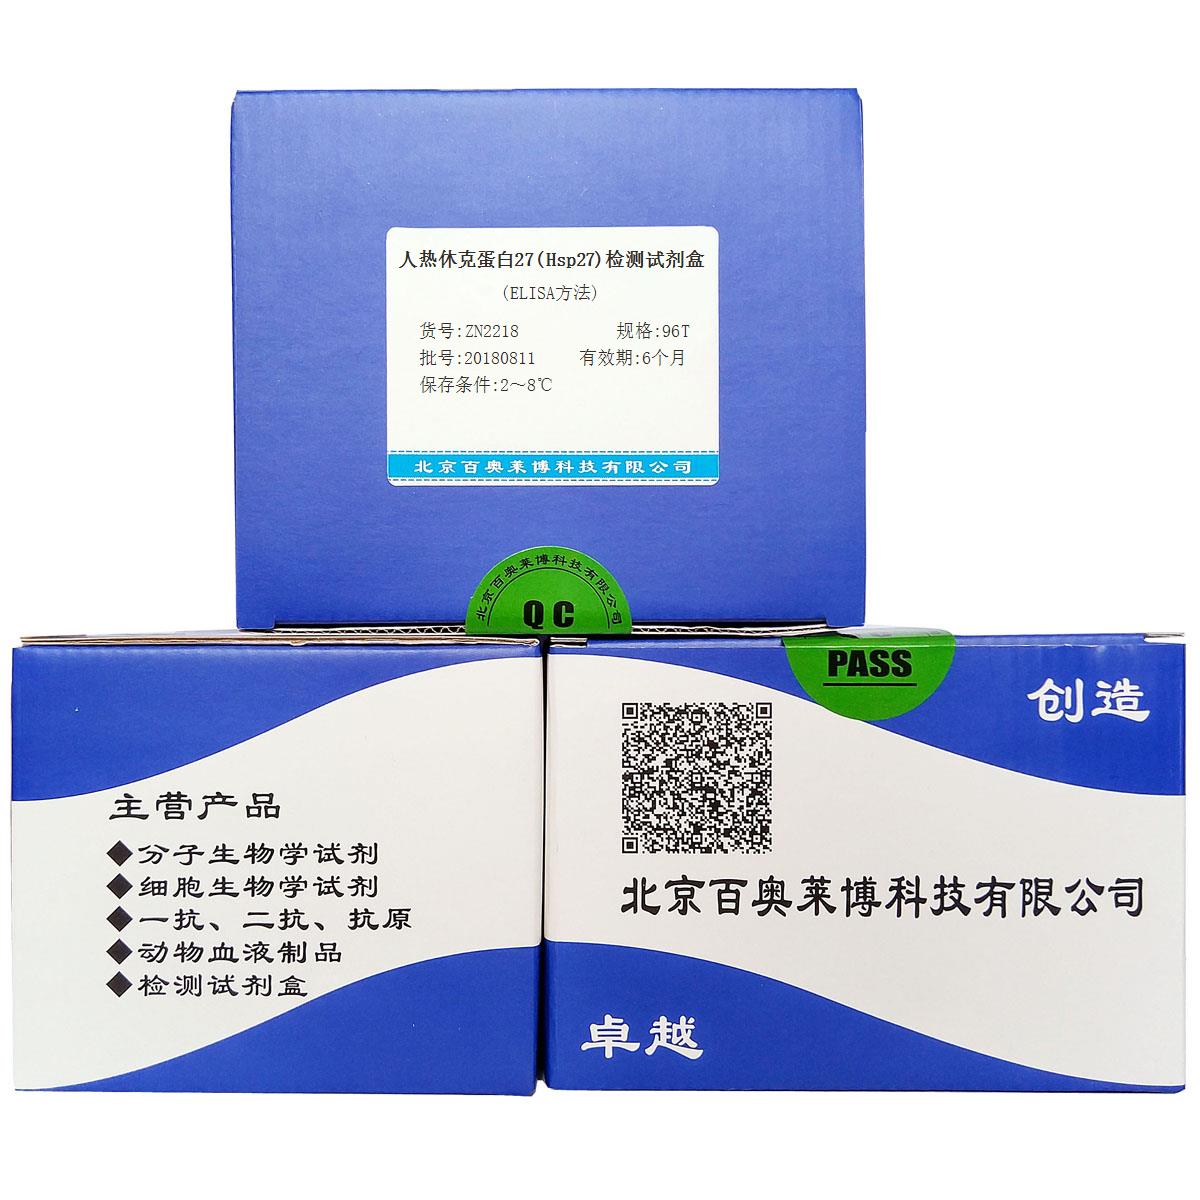 人热休克蛋白27(Hsp27)检测试剂盒(ELISA方法)